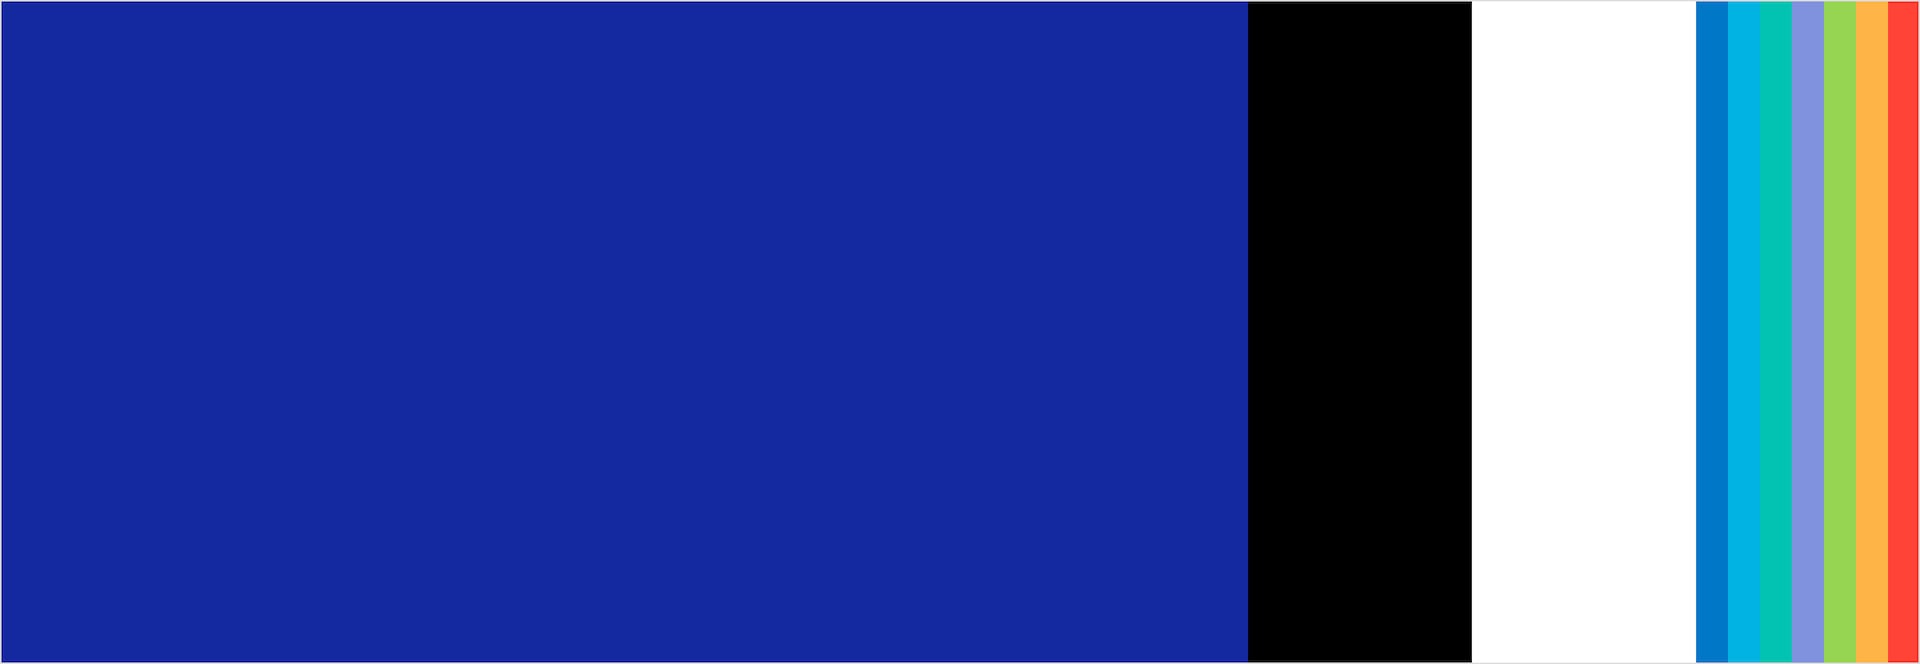 가로로 긴 사각형에 삼성 블루, 블랙, 화이트, 그리고 하늘색, 바다색, 청록색, 라벤더색, 클로버색, 사프란색, 산호색의 일러스트레이션 컬러가 있습니다.